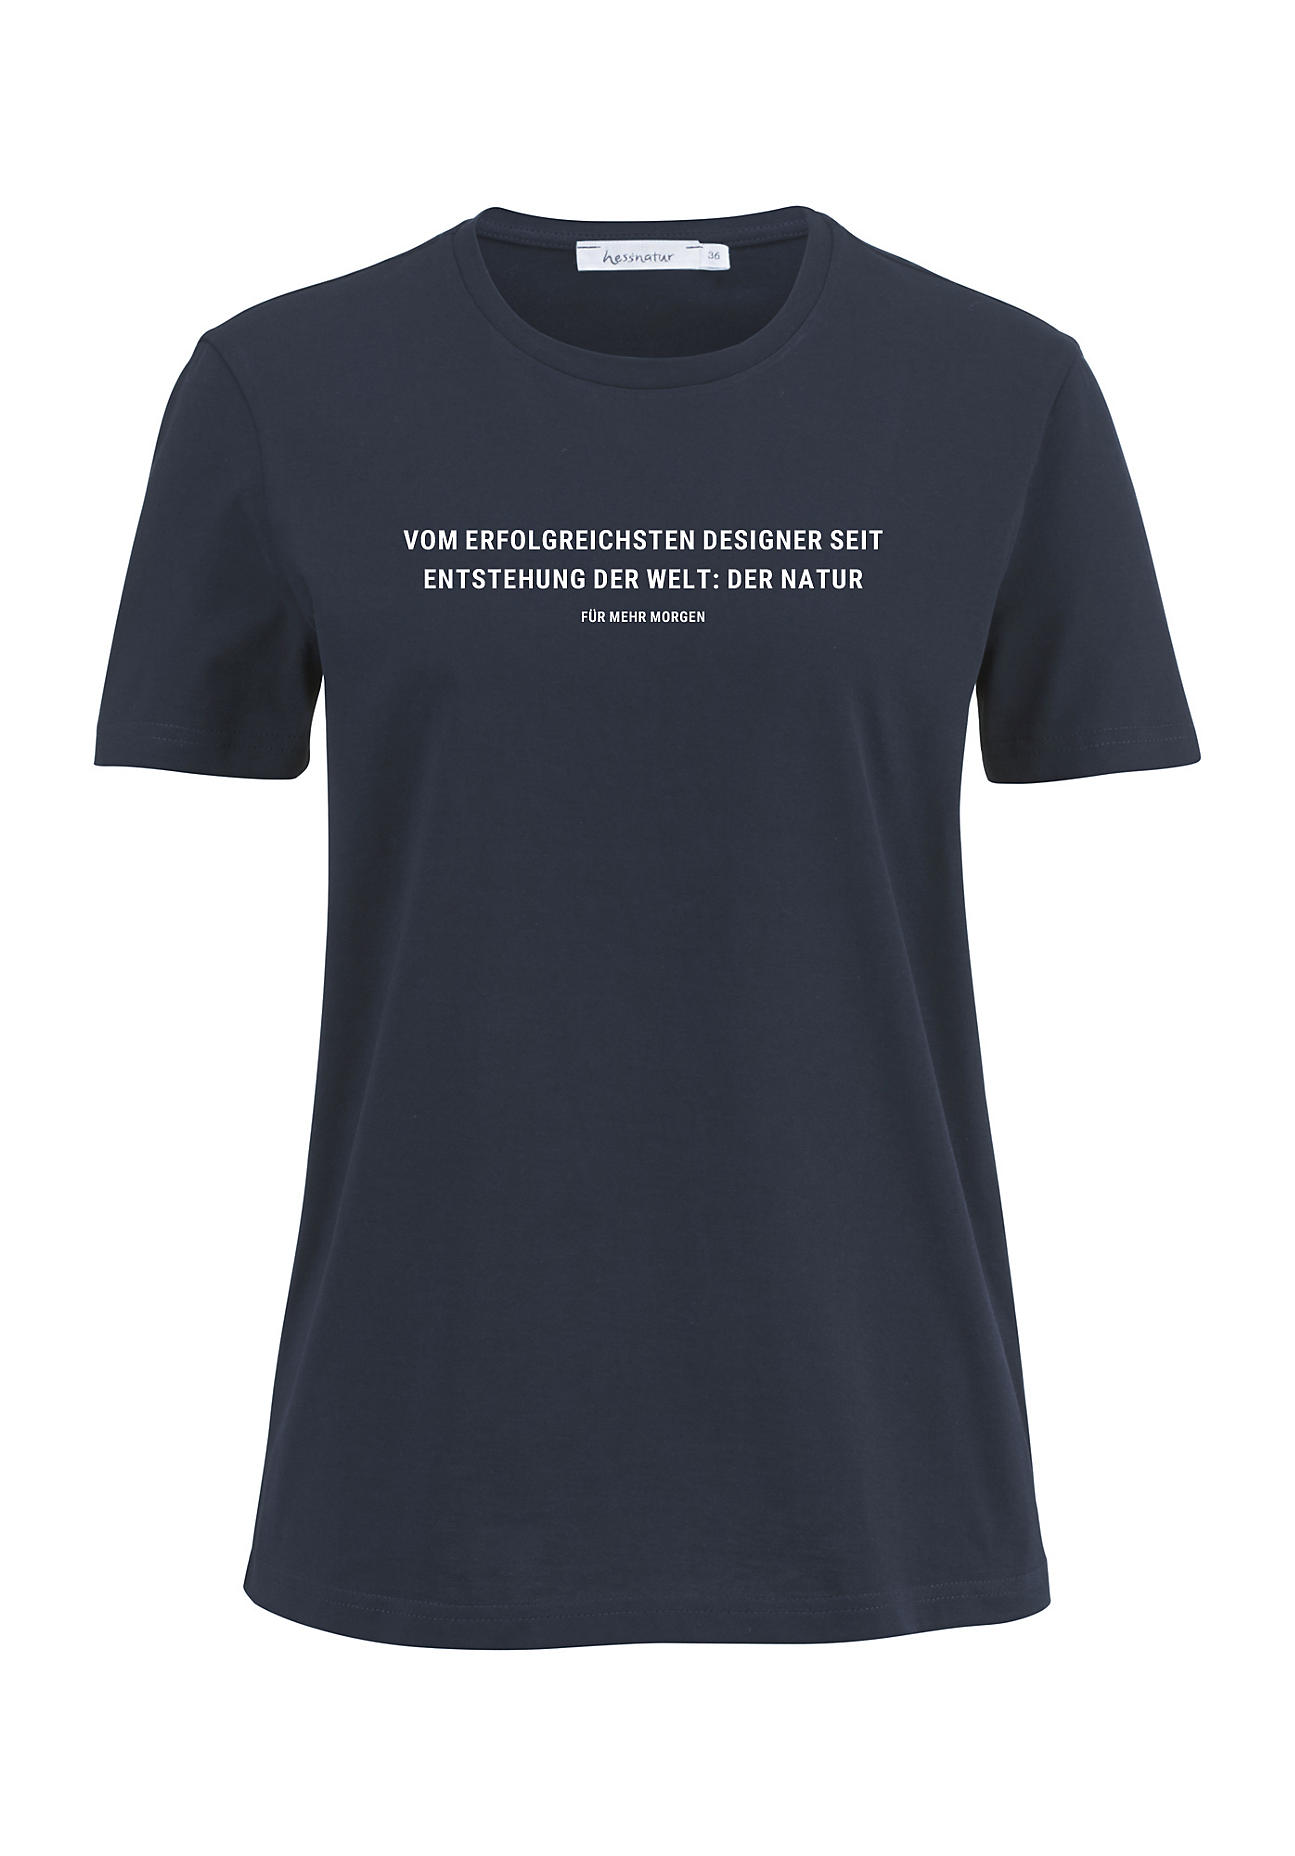 hessnatur Damen Statement Shirt aus Bio-Baumwolle - blau - Größe 38